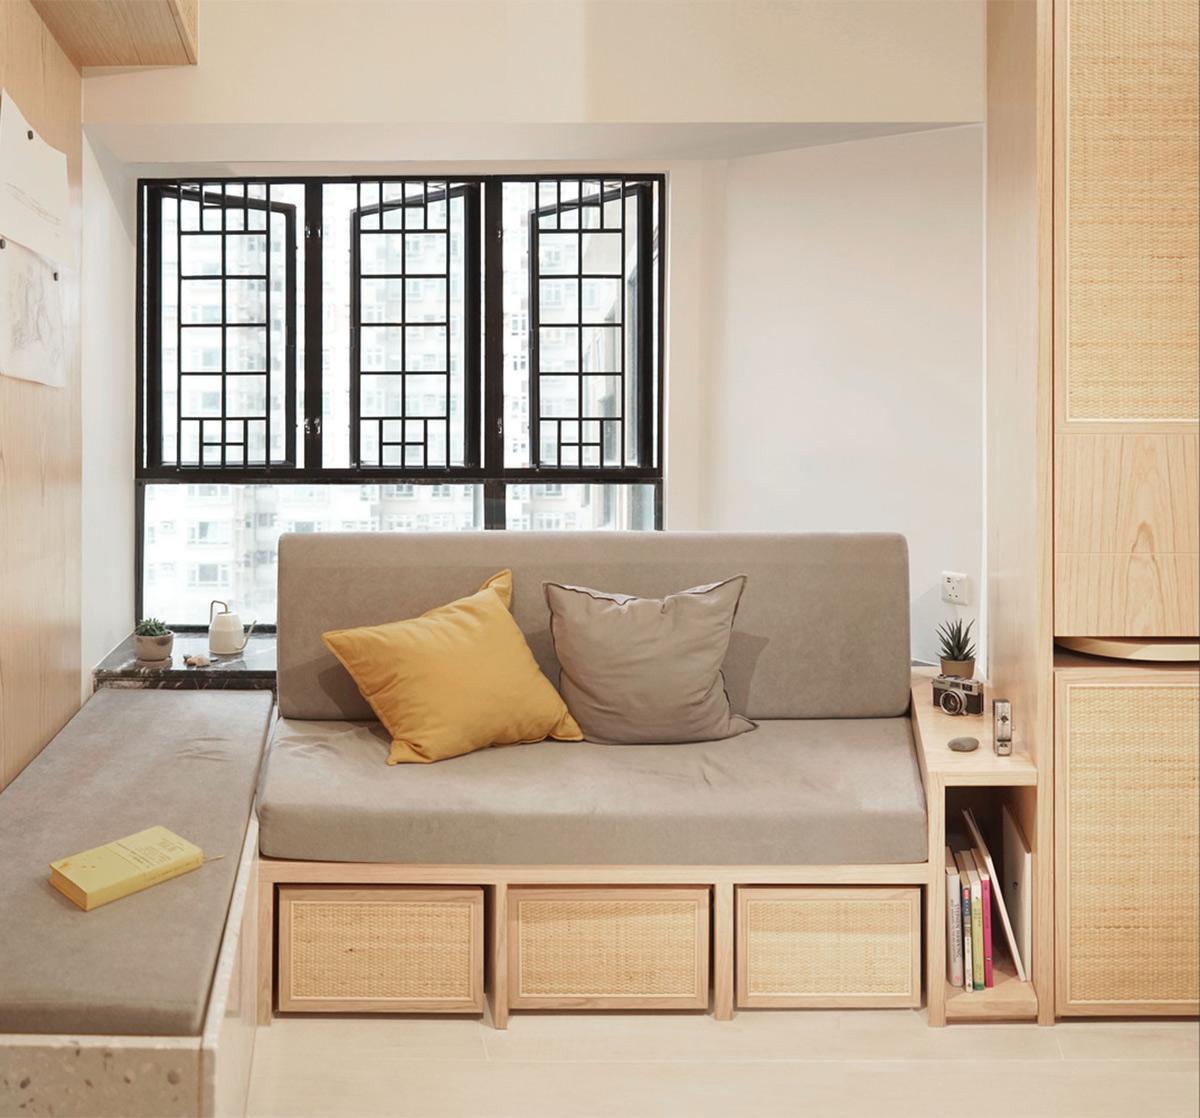 Giải pháp sắp xếp nội thất thông minh cho căn hộ có diện tích nhỏ